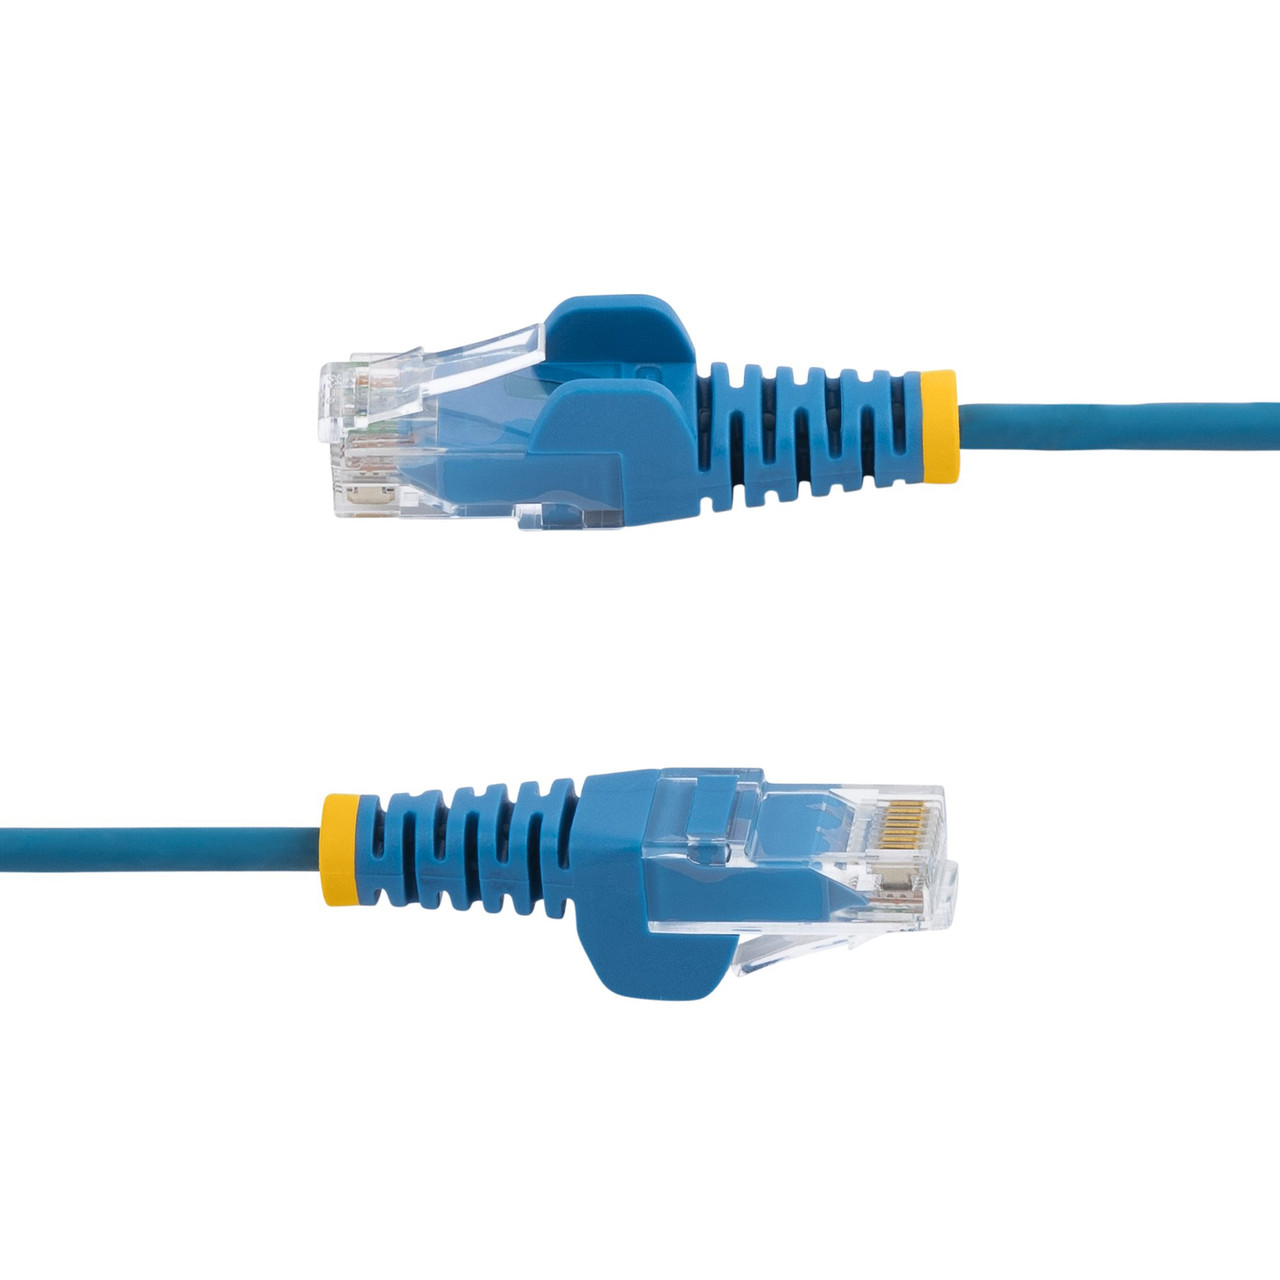 StarTech.com 3 m CAT6 Cable - Slim - Snagless RJ45 Connectors - Blue